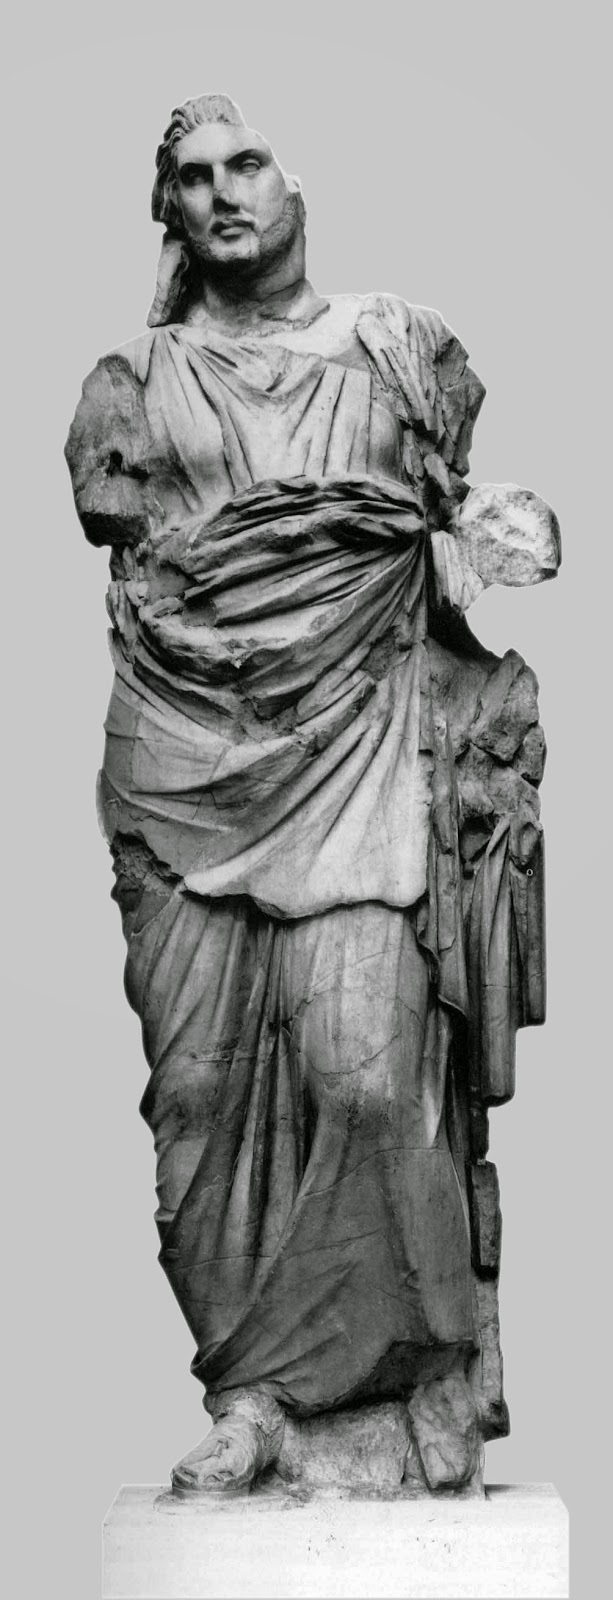 Άγαλμα όρθιου ντυμένου άνδρα από το Μαυσωλείο της Αλικαρνασσού. Λονδίνο, Βρετανικό Μουσείο.